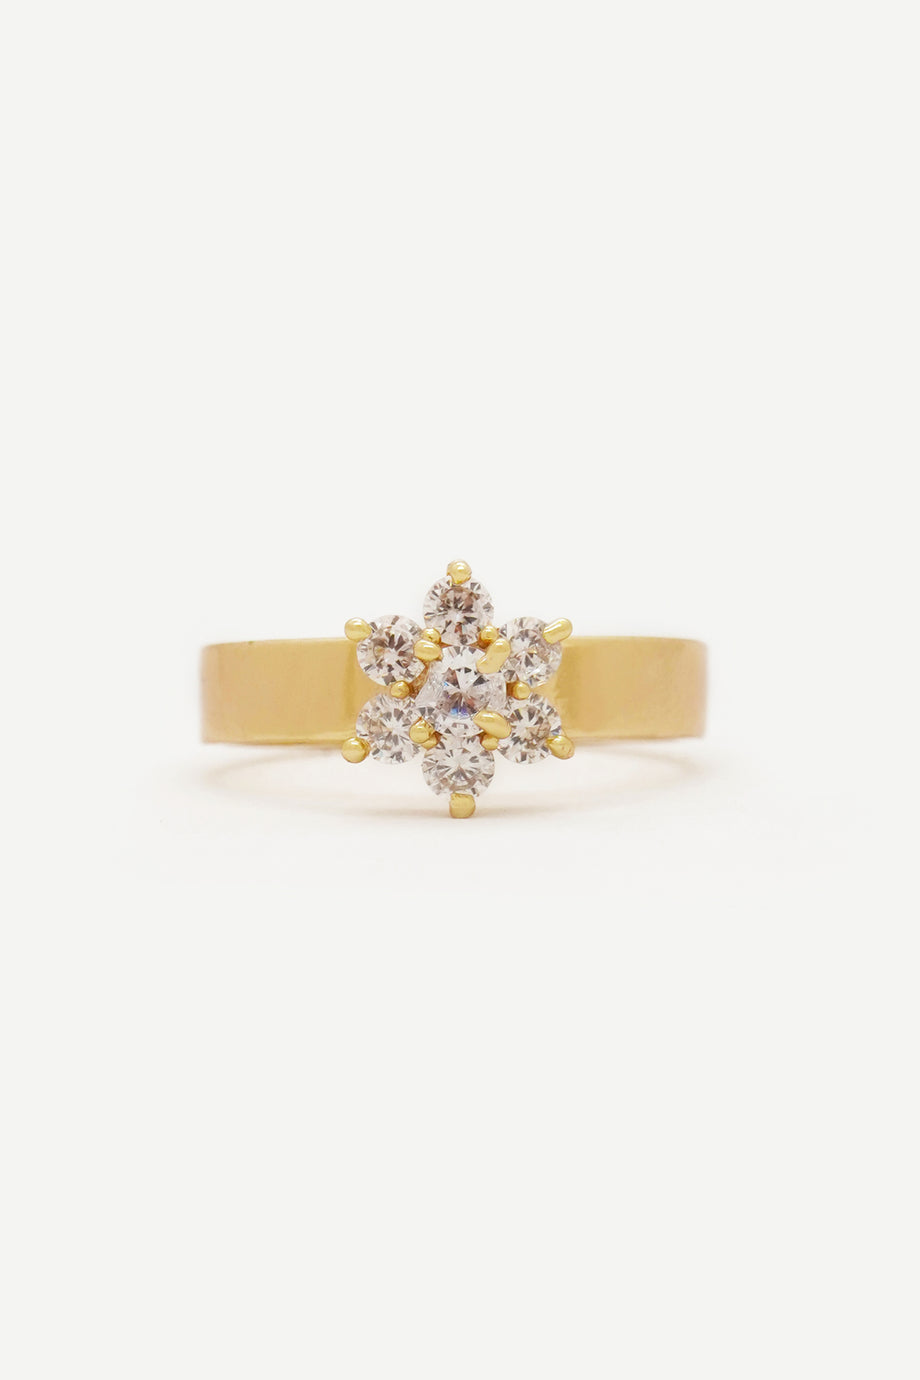 Shop Gold Diamond Finger Rings for Men Online| PC Chandra